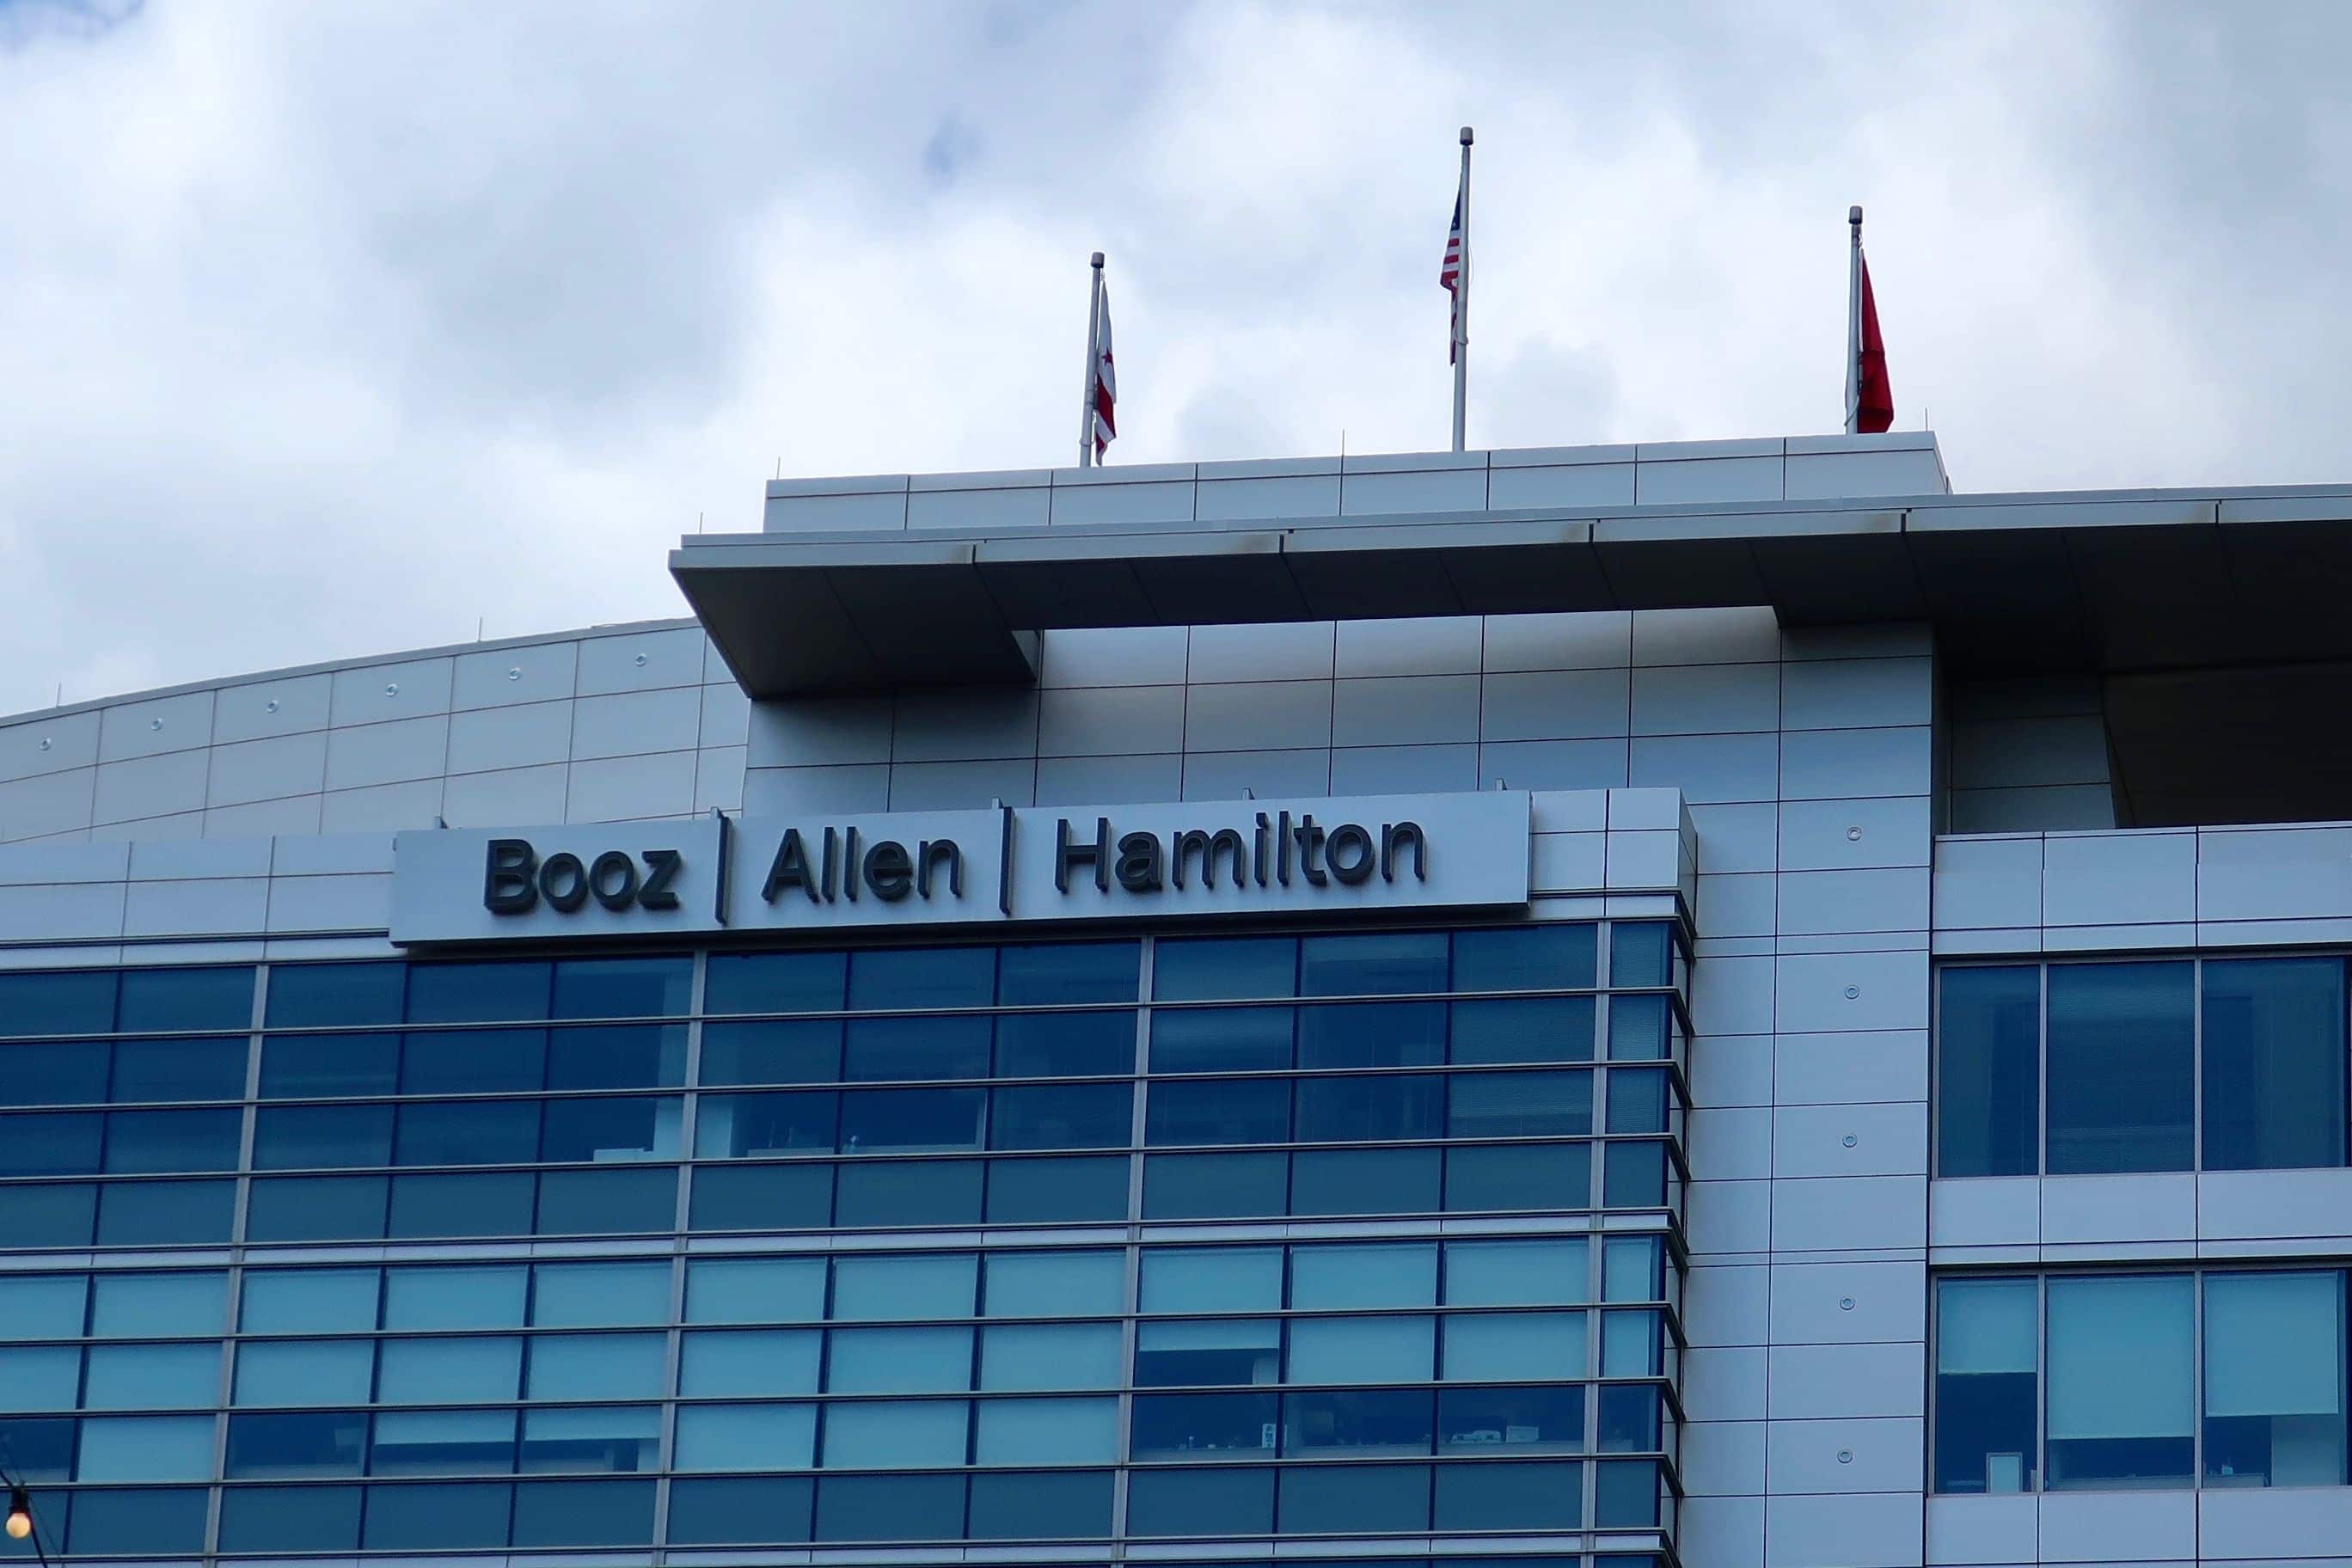 WASHINGTON, DC - APRIL 21, 2019: BOOZ ALLEN HAMILTON - Sign on building exterior